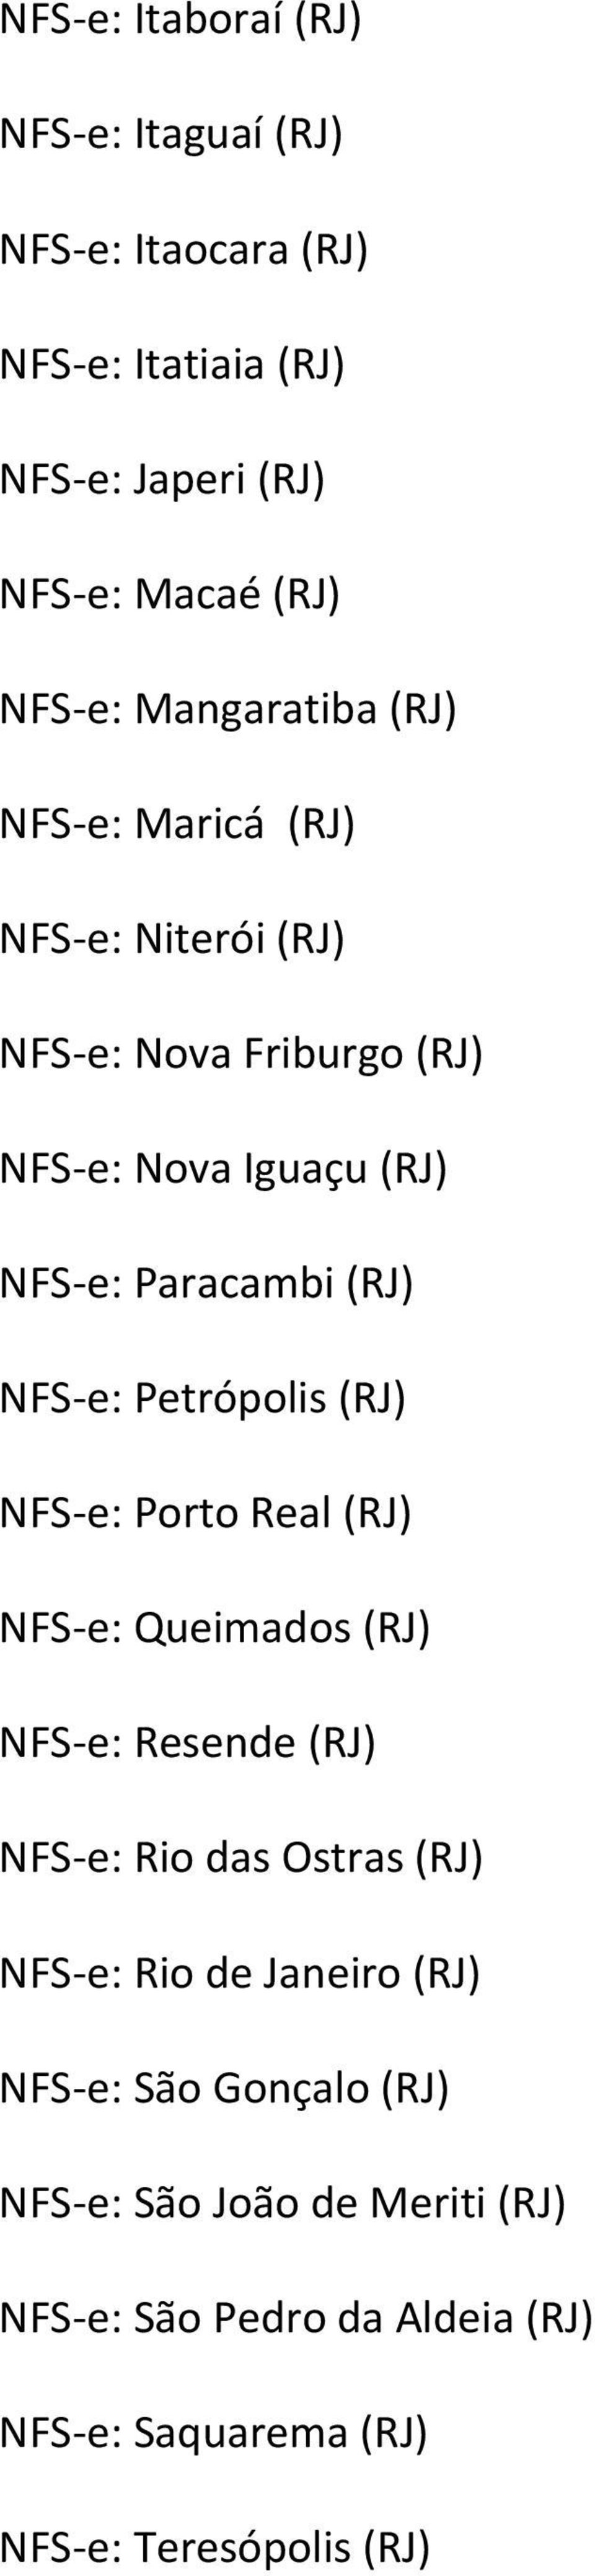 e: Petrópolis (RJ) NFS e: Porto Real (RJ) NFS e: Queimados (RJ) NFS e: Resende (RJ) NFS e: Rio das Ostras (RJ) NFS e: Rio de Janeiro